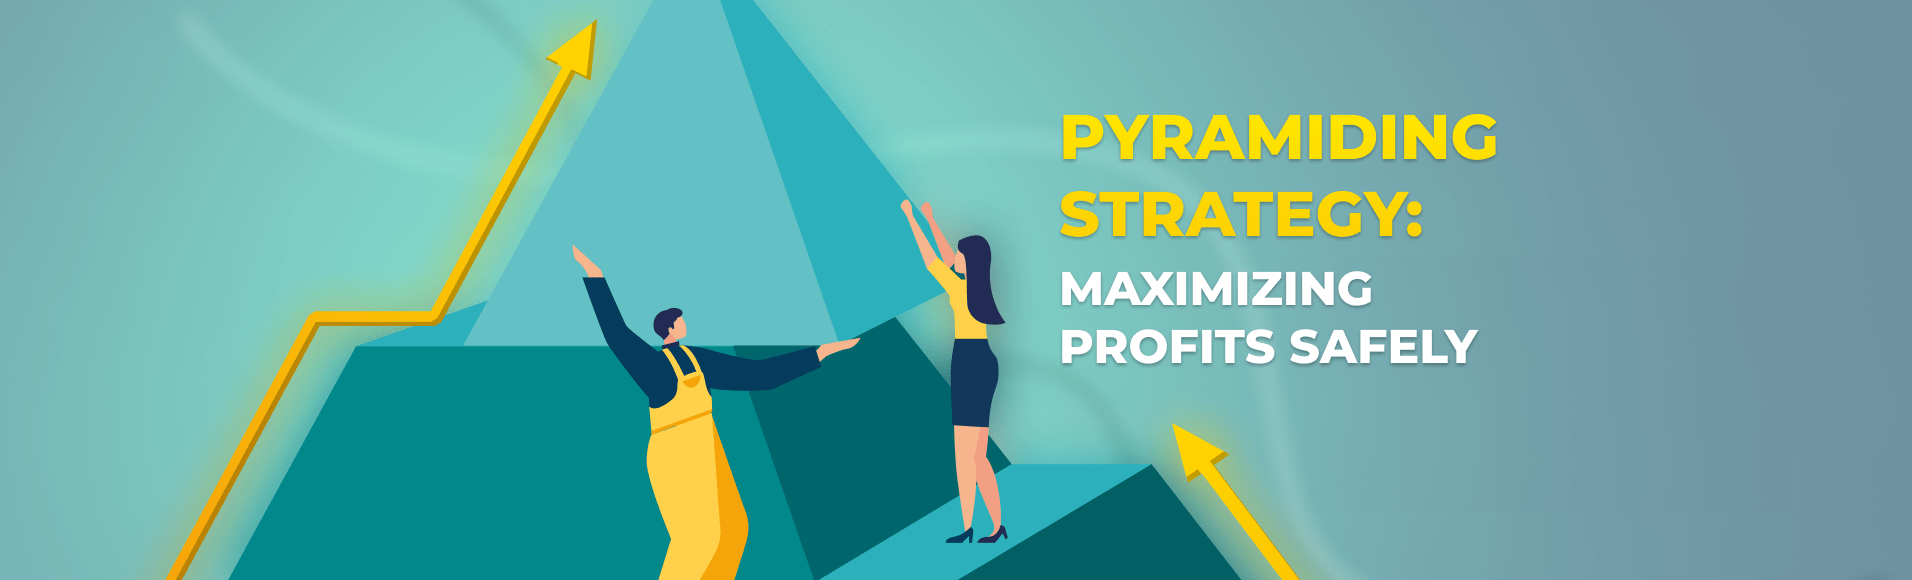 Estratégia de Pirâmide: Maximizando os Lucros com Segurança